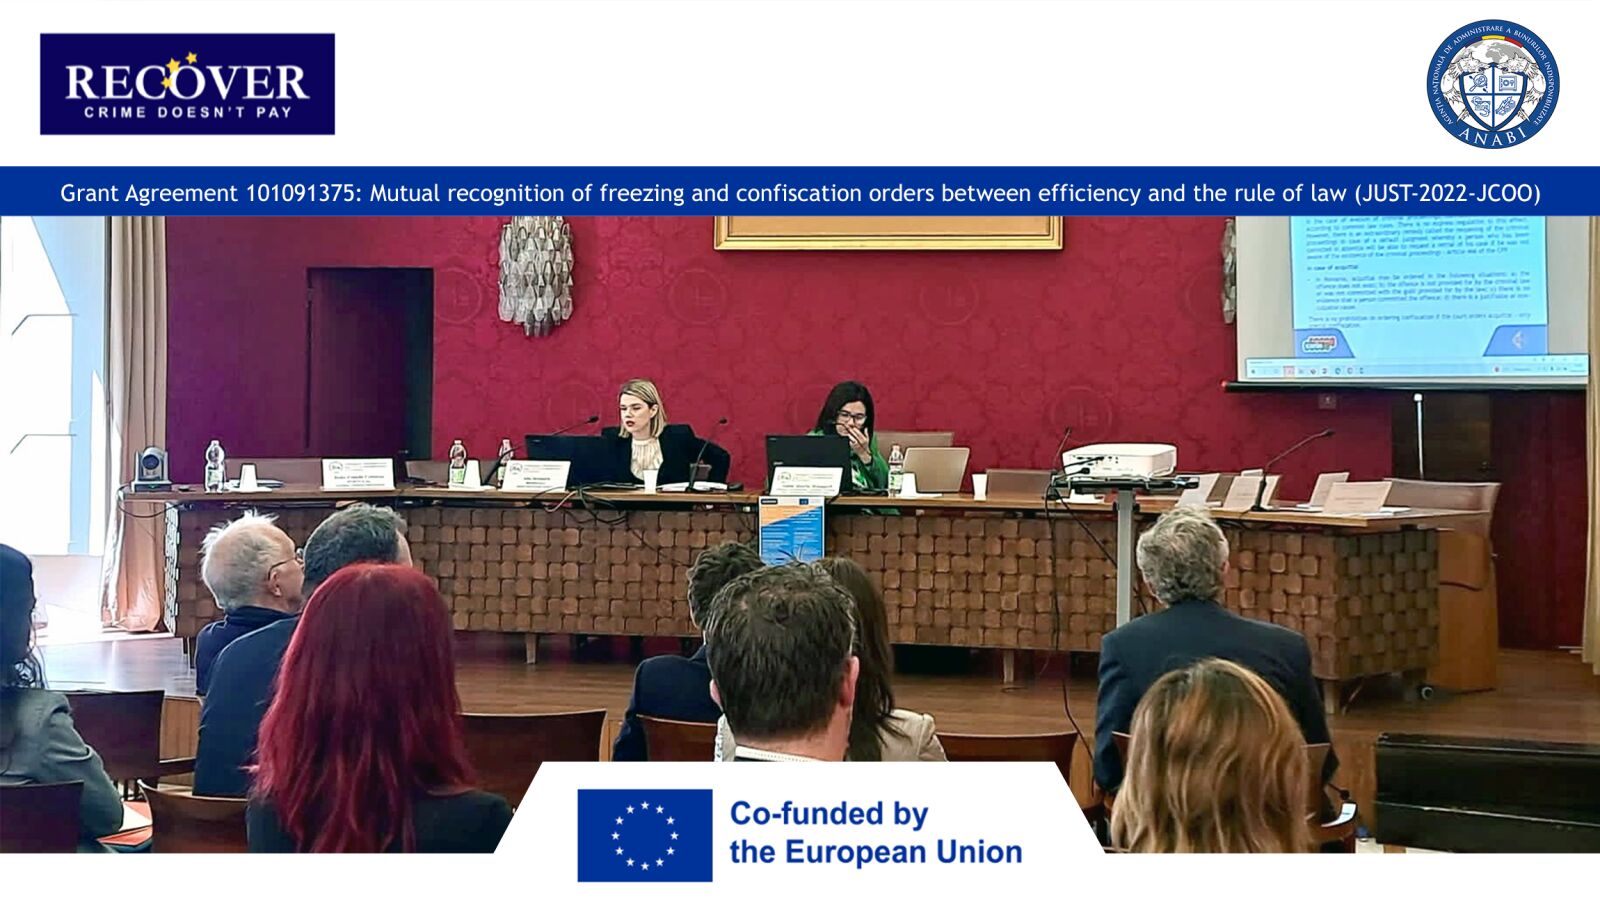 ANABI - partener în cadrul proiectului european RECOVER PROJECT, menit să îmbunătățească punerea în aplicare a Regulamentului (UE) 2018/1805 privind recunoașterea reciprocă a ordinelor de indisponibilizare și de confiscare